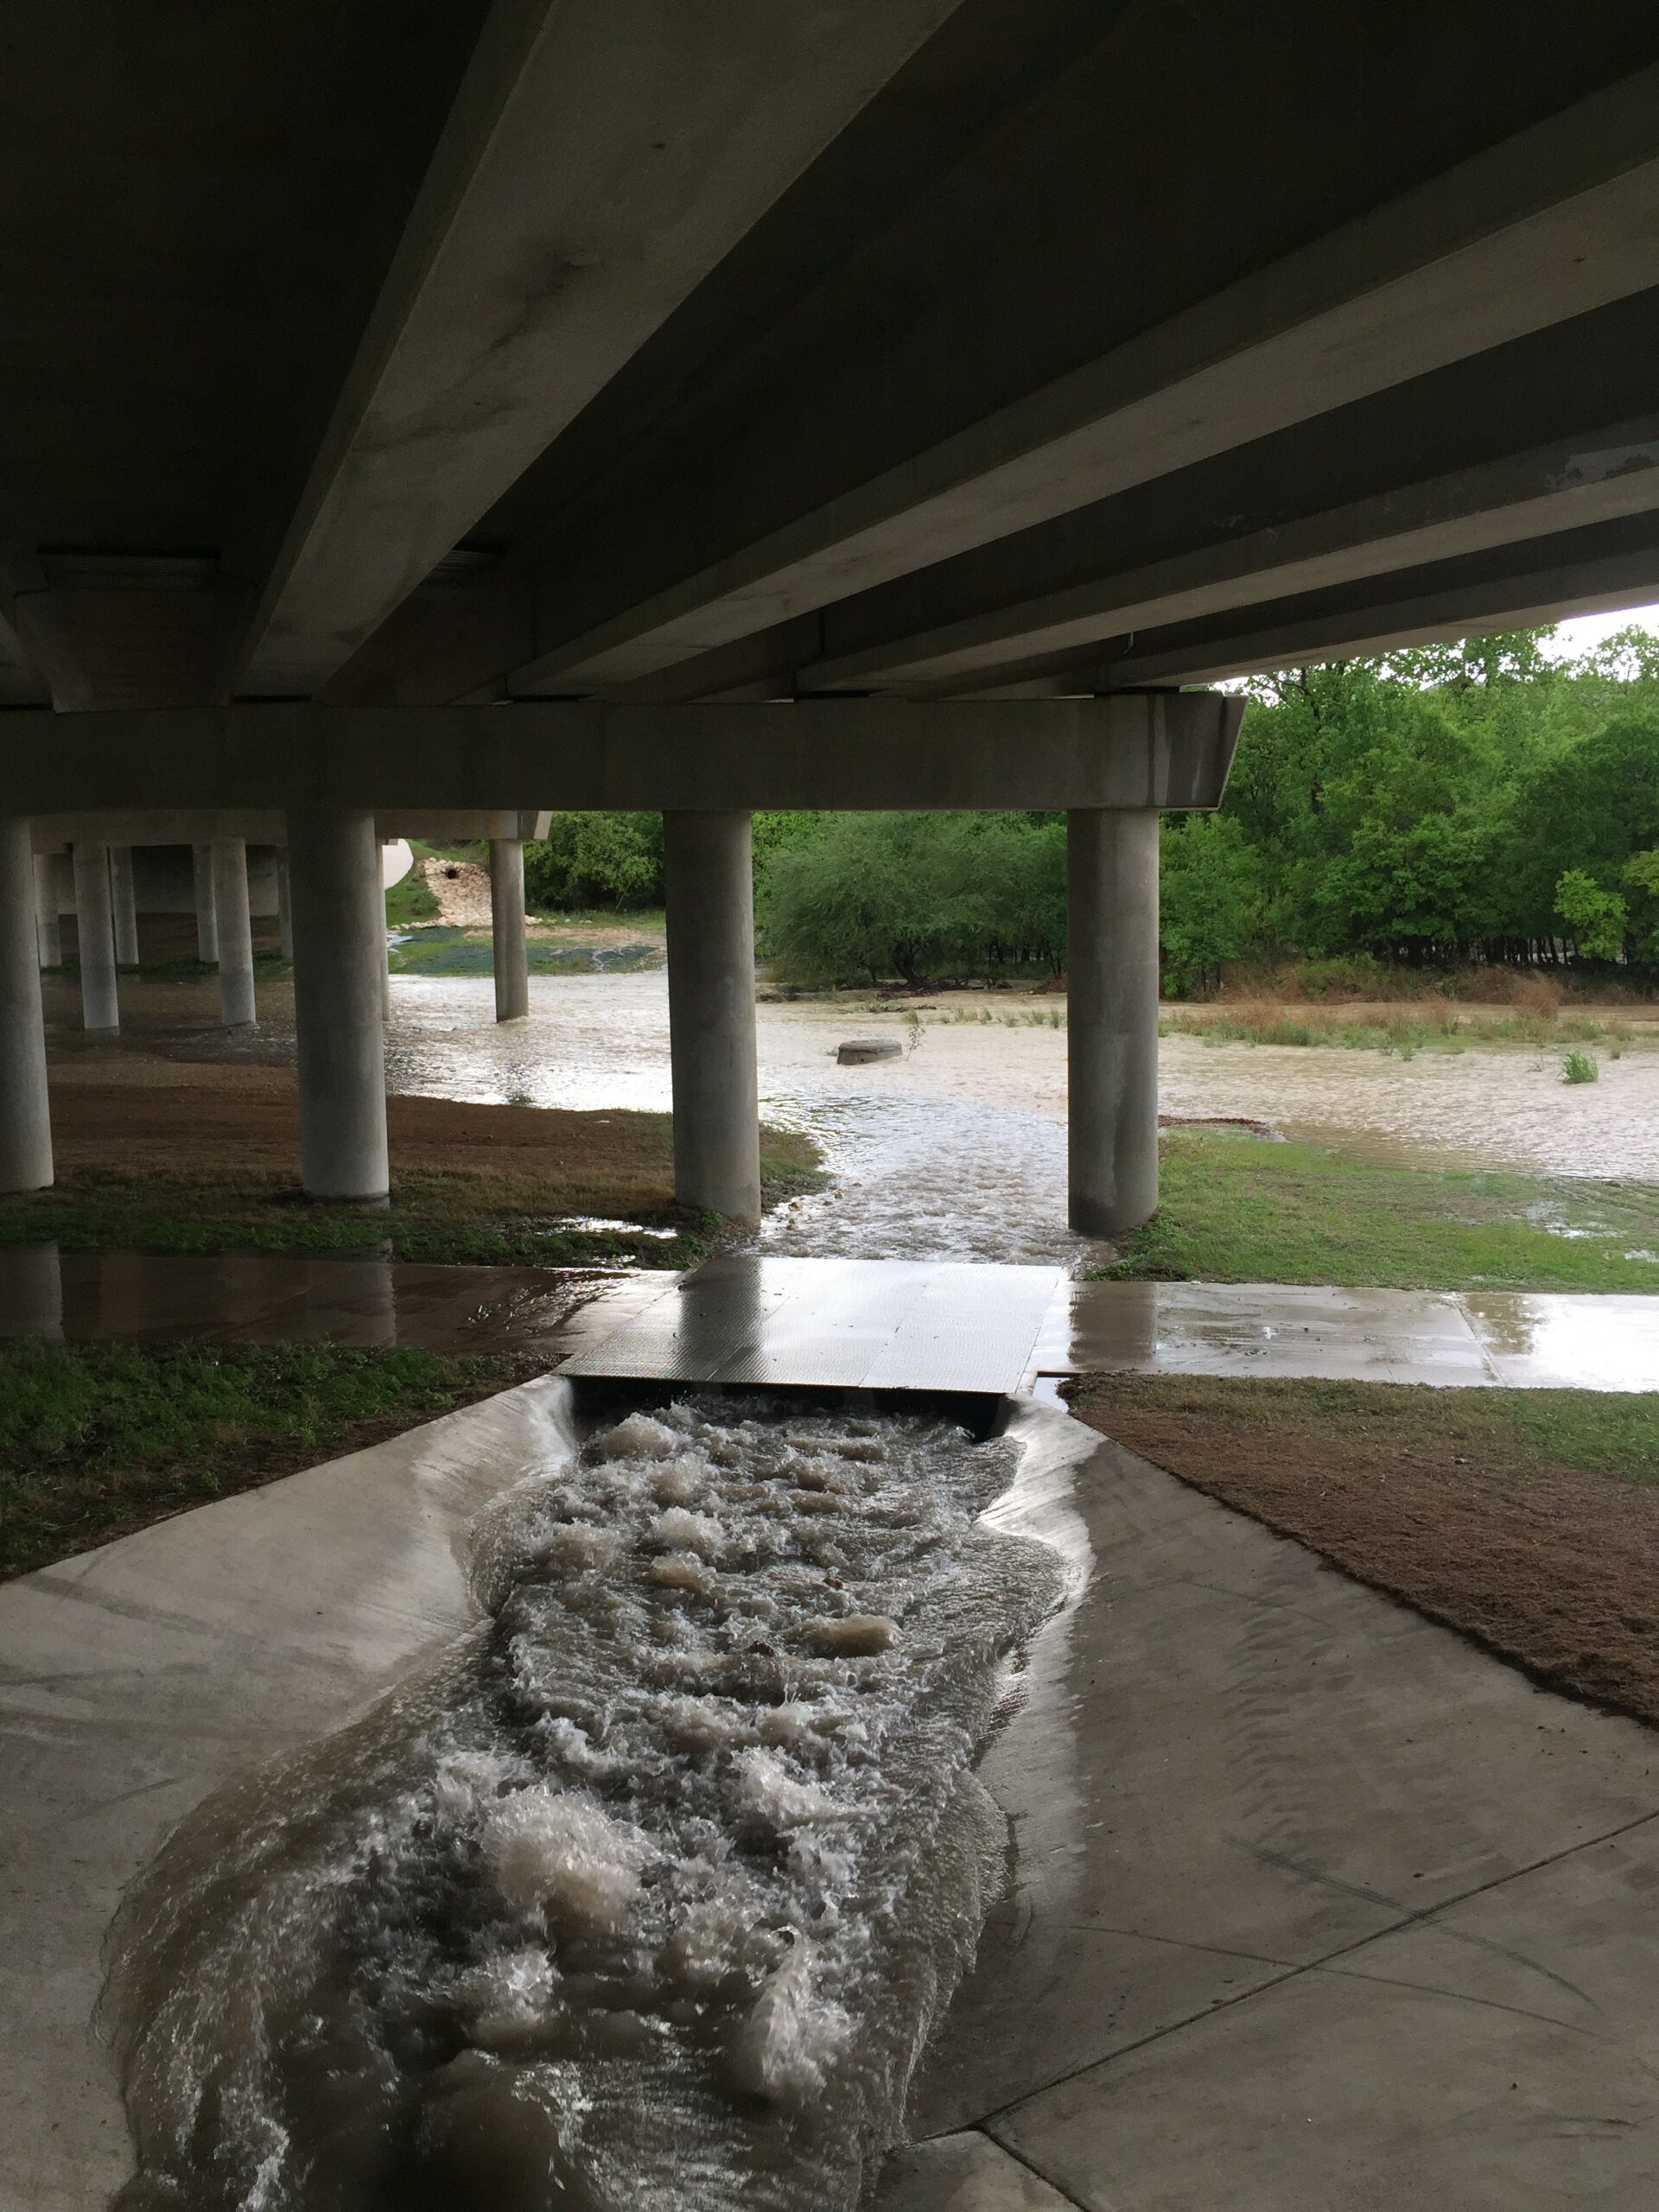 Storm water runoff under bridge